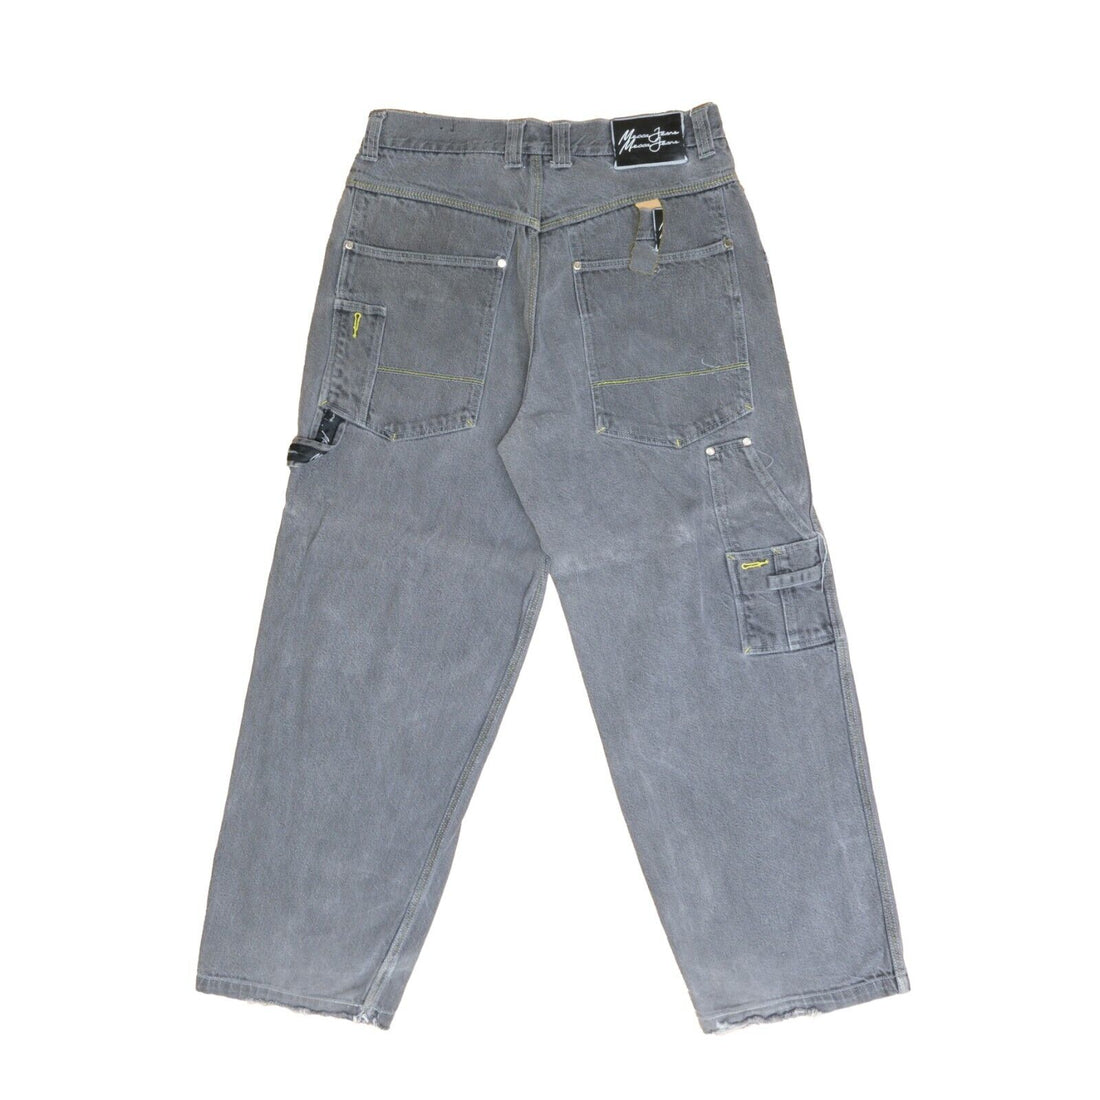 Vintage Mecca Denim Jeans Pants Size 34W X 32L Gray